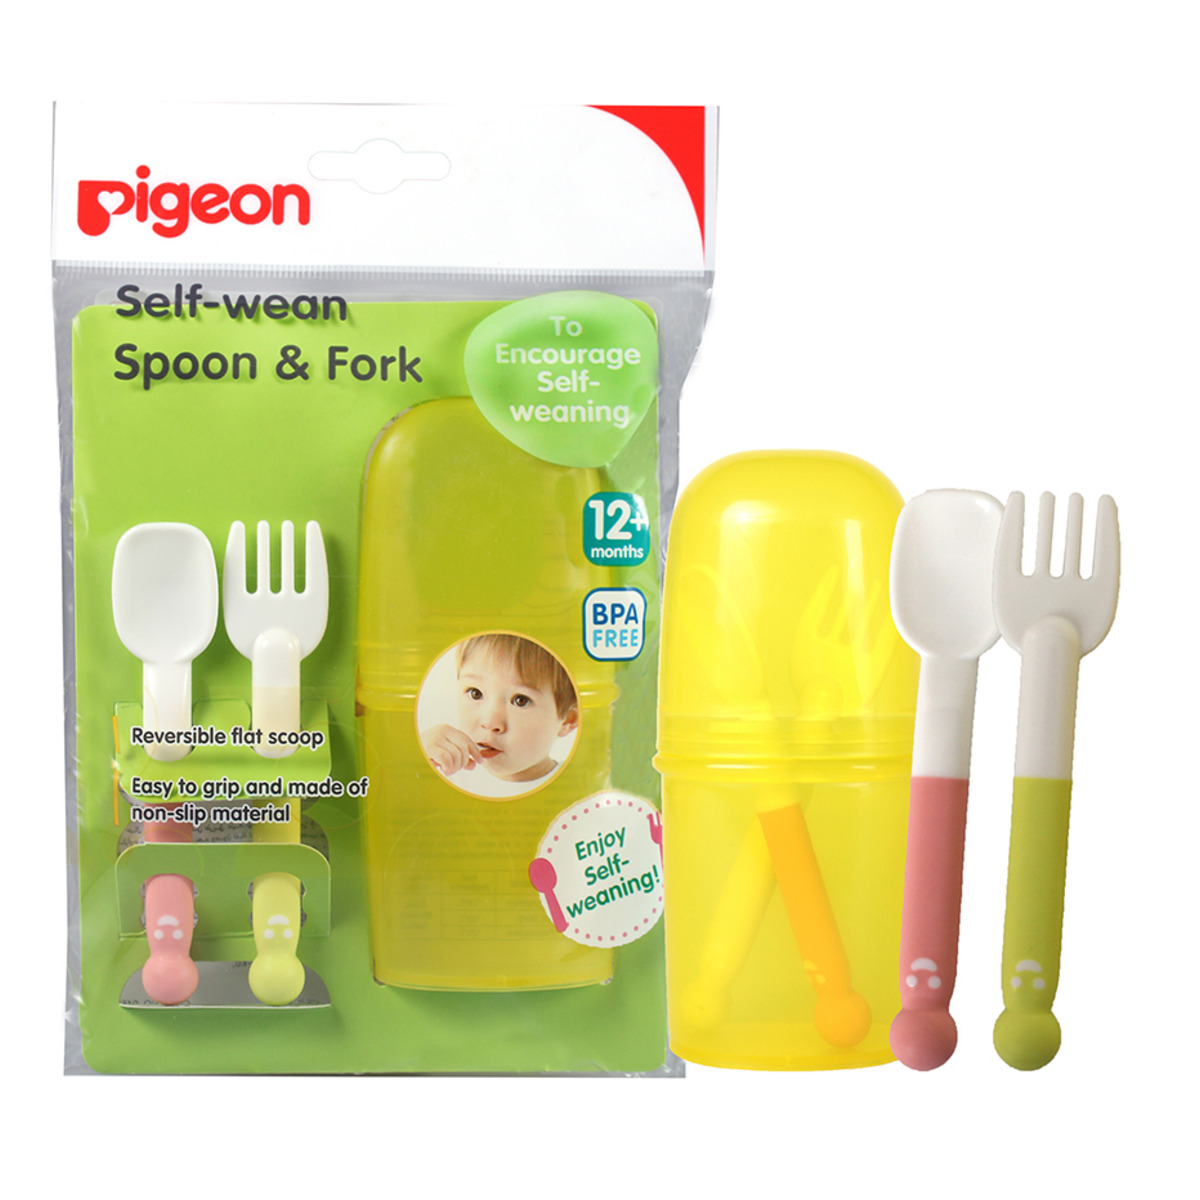 Pigeon Self-Wean Spoon & Fork